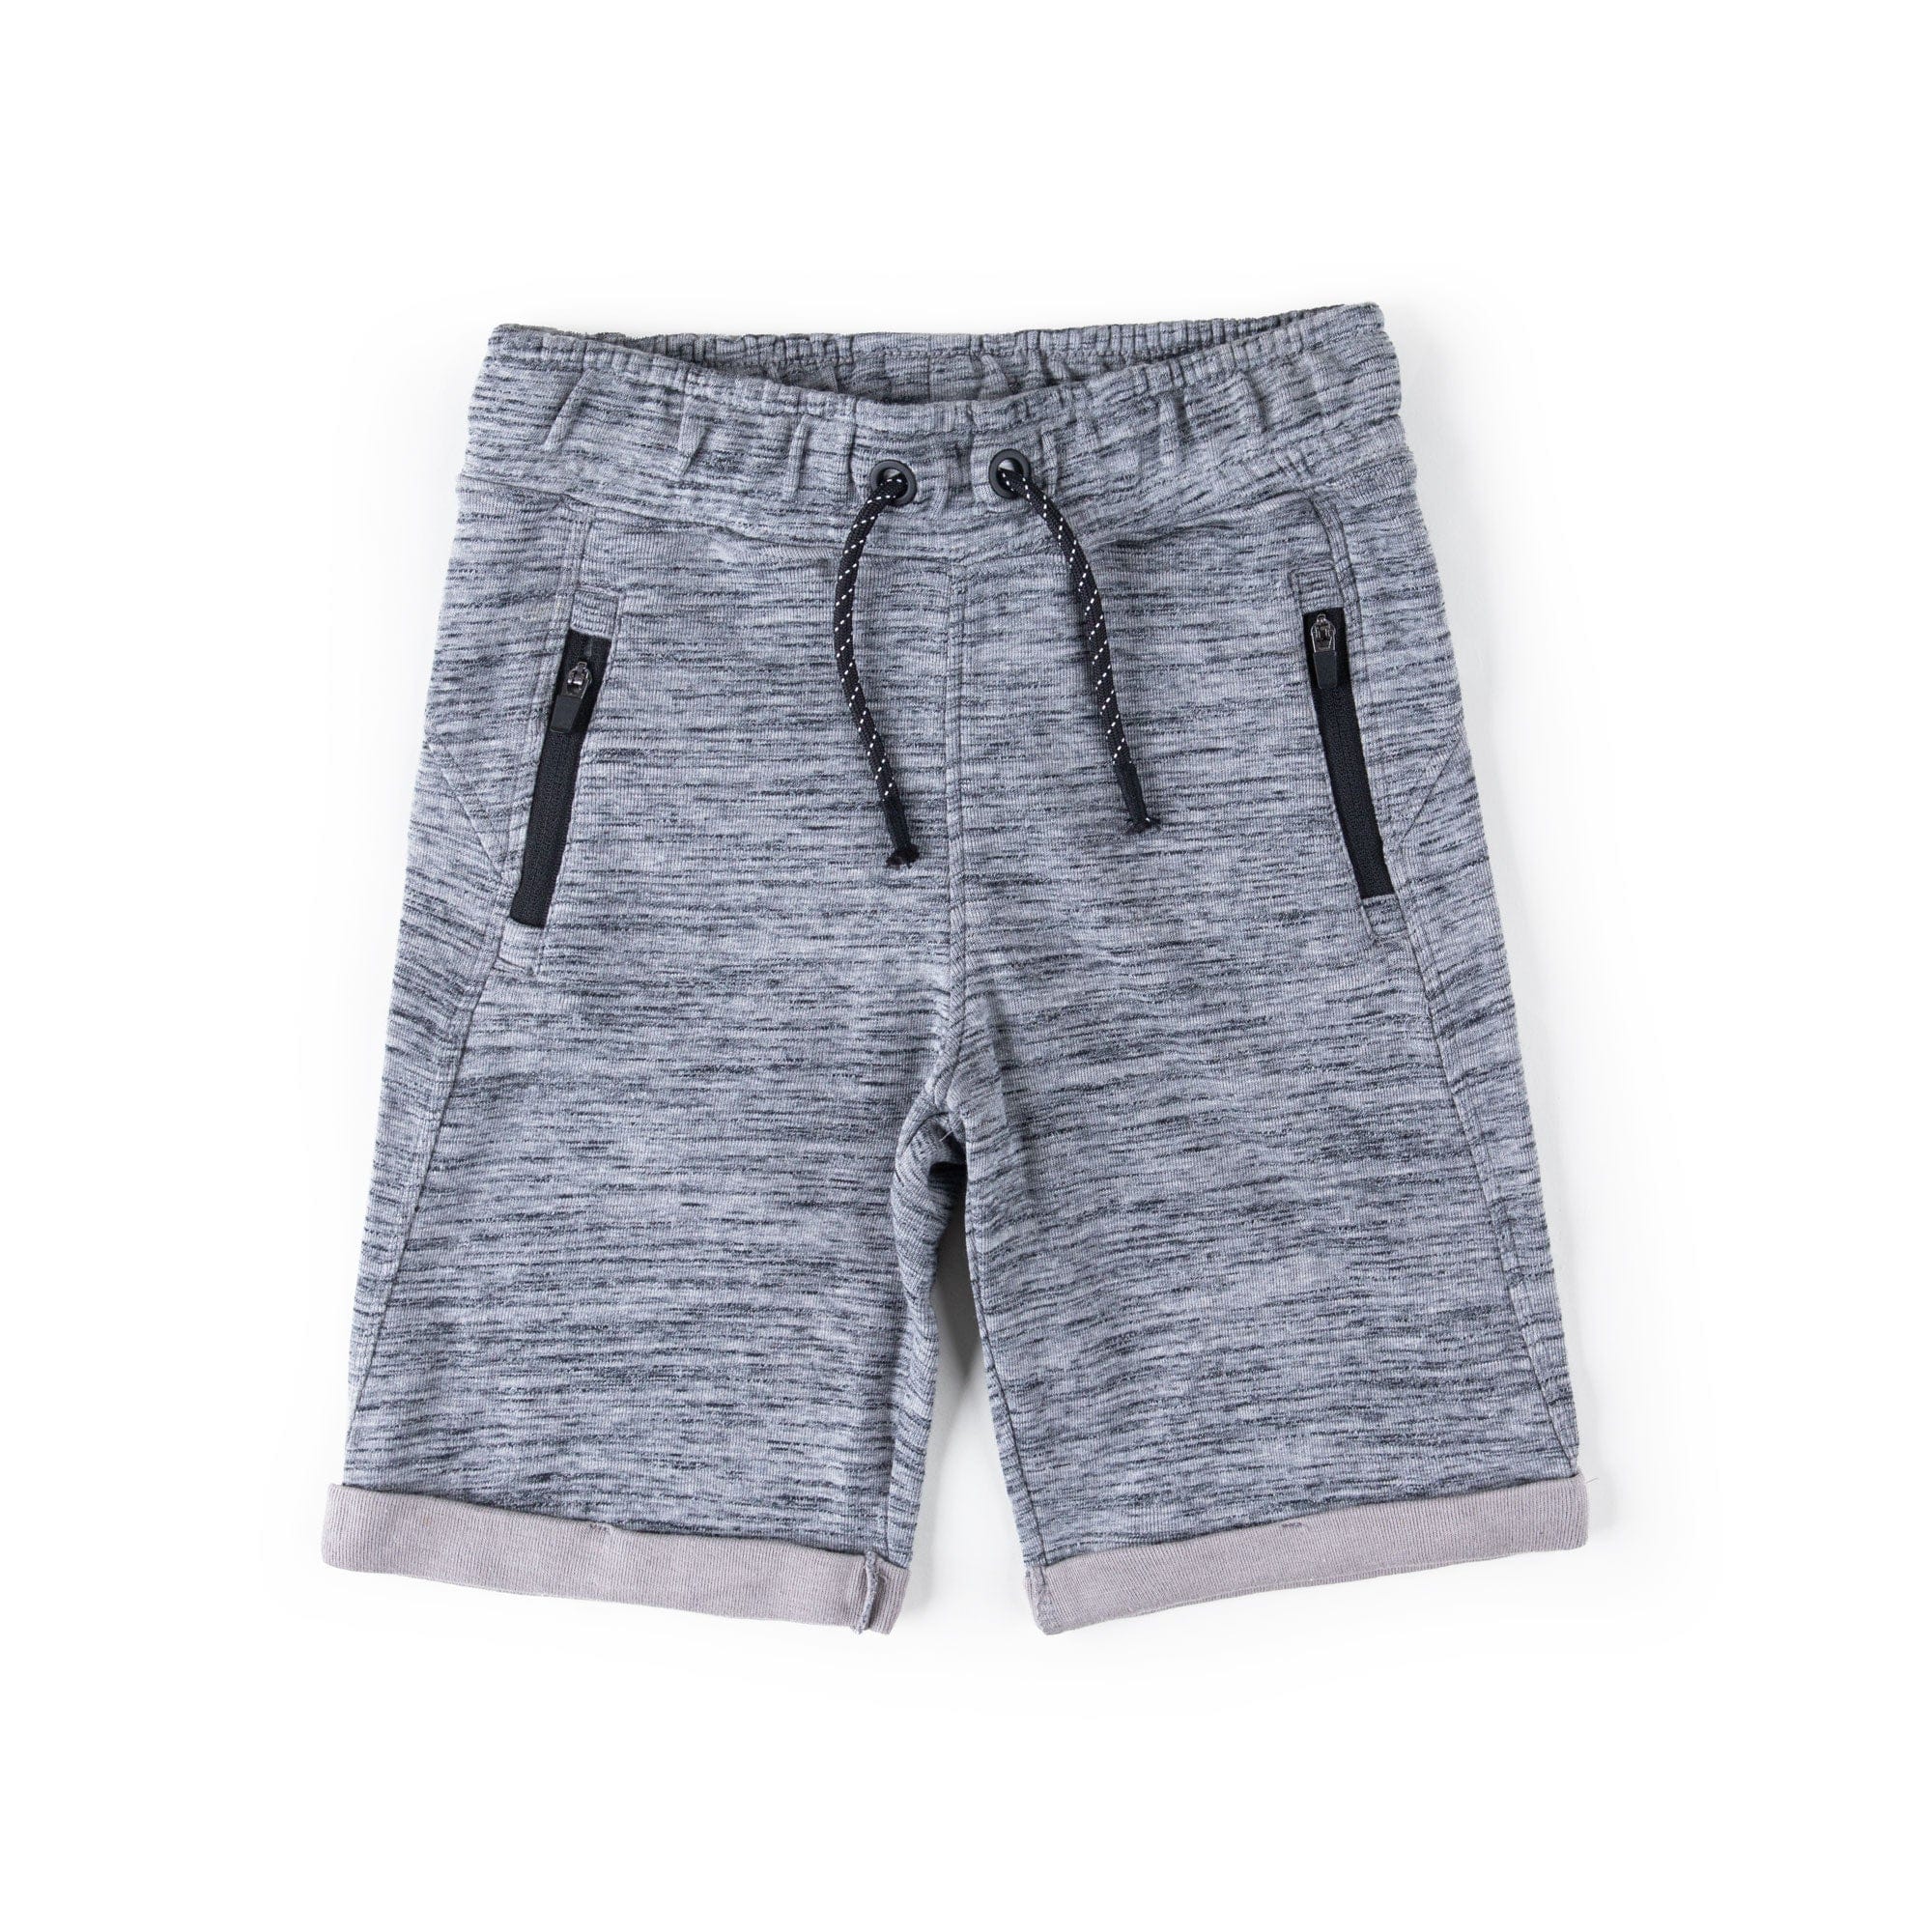 Stone Harbor Boys Shorts Grey / 5-6 Y BOY'S ZIPPER POCKETS TEXTURE SHORTS